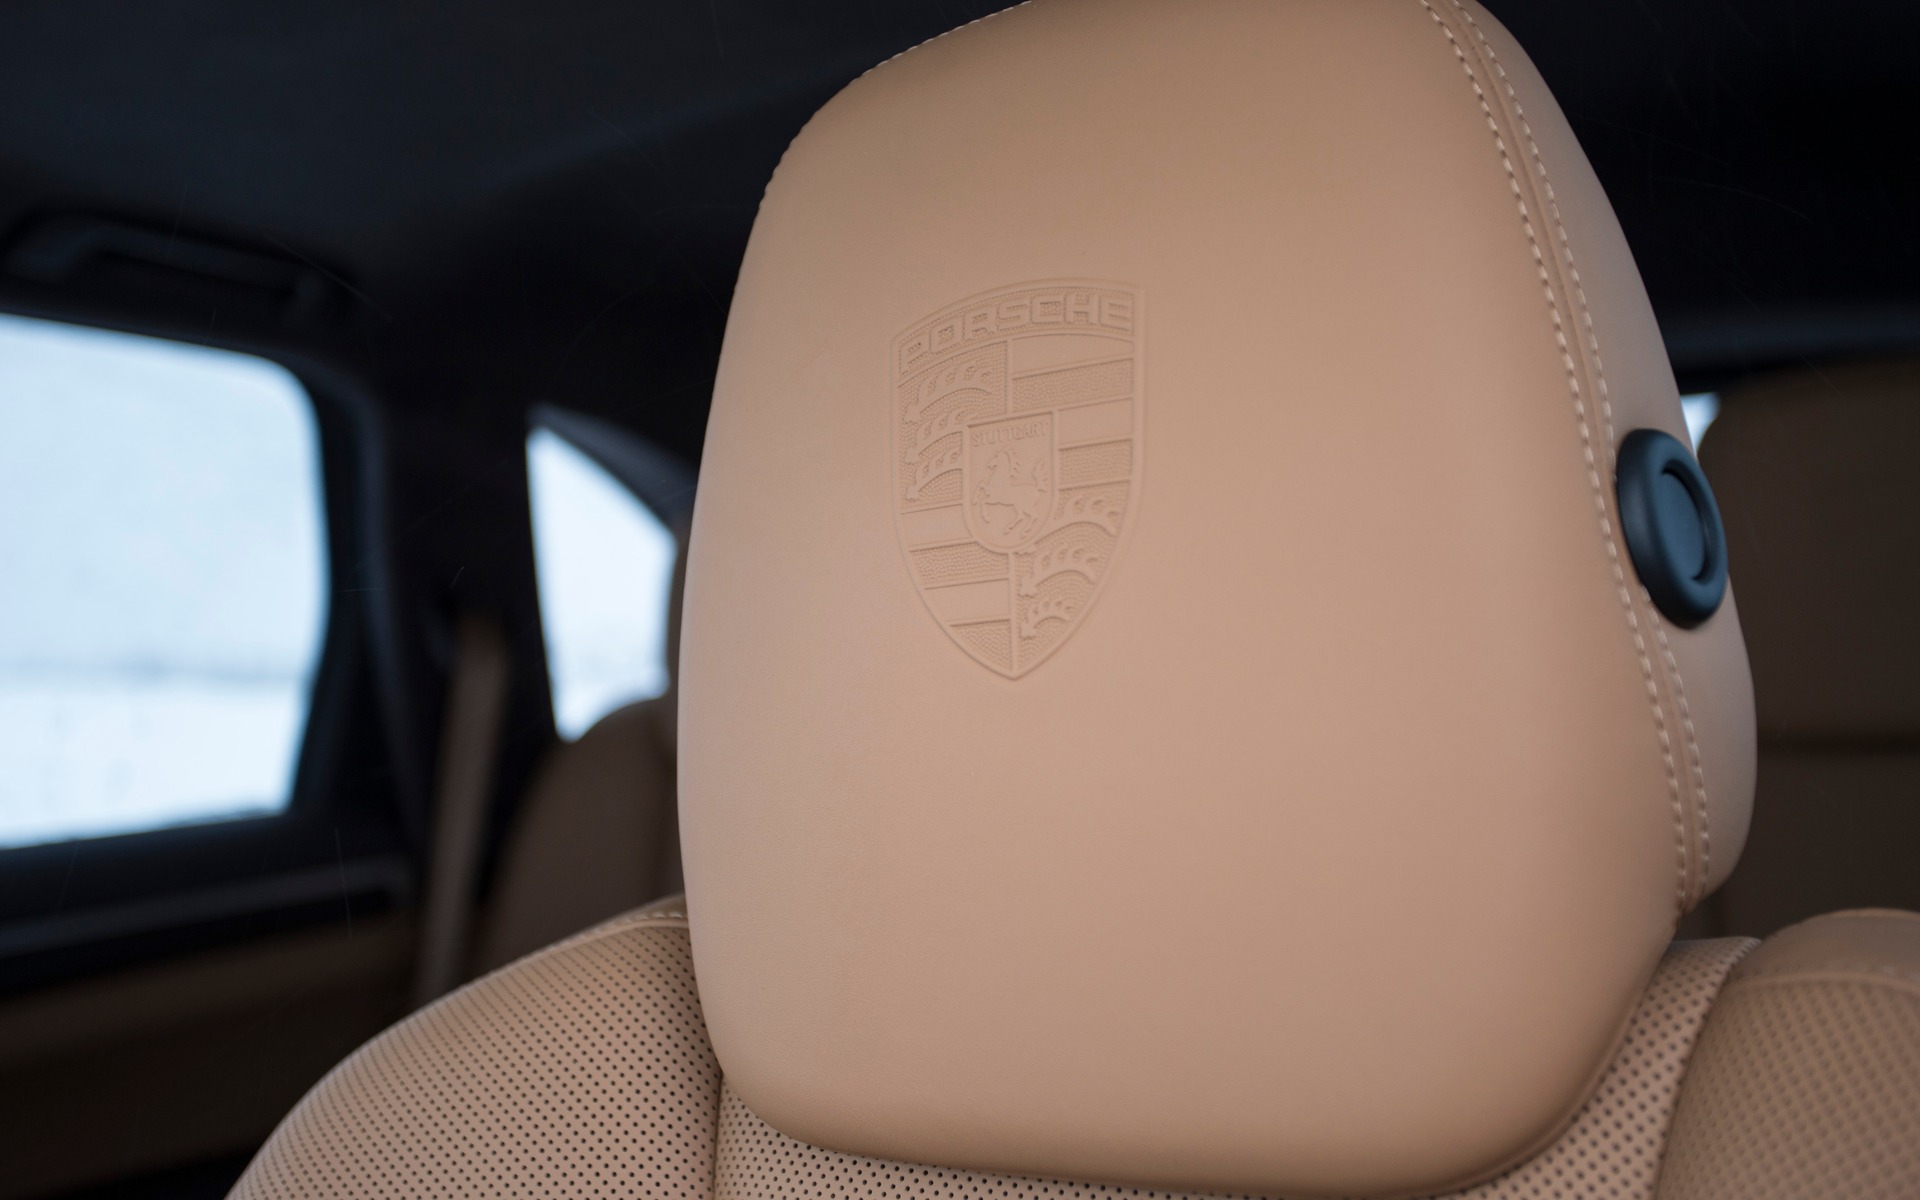 Porsche logo embossed in the headrests.